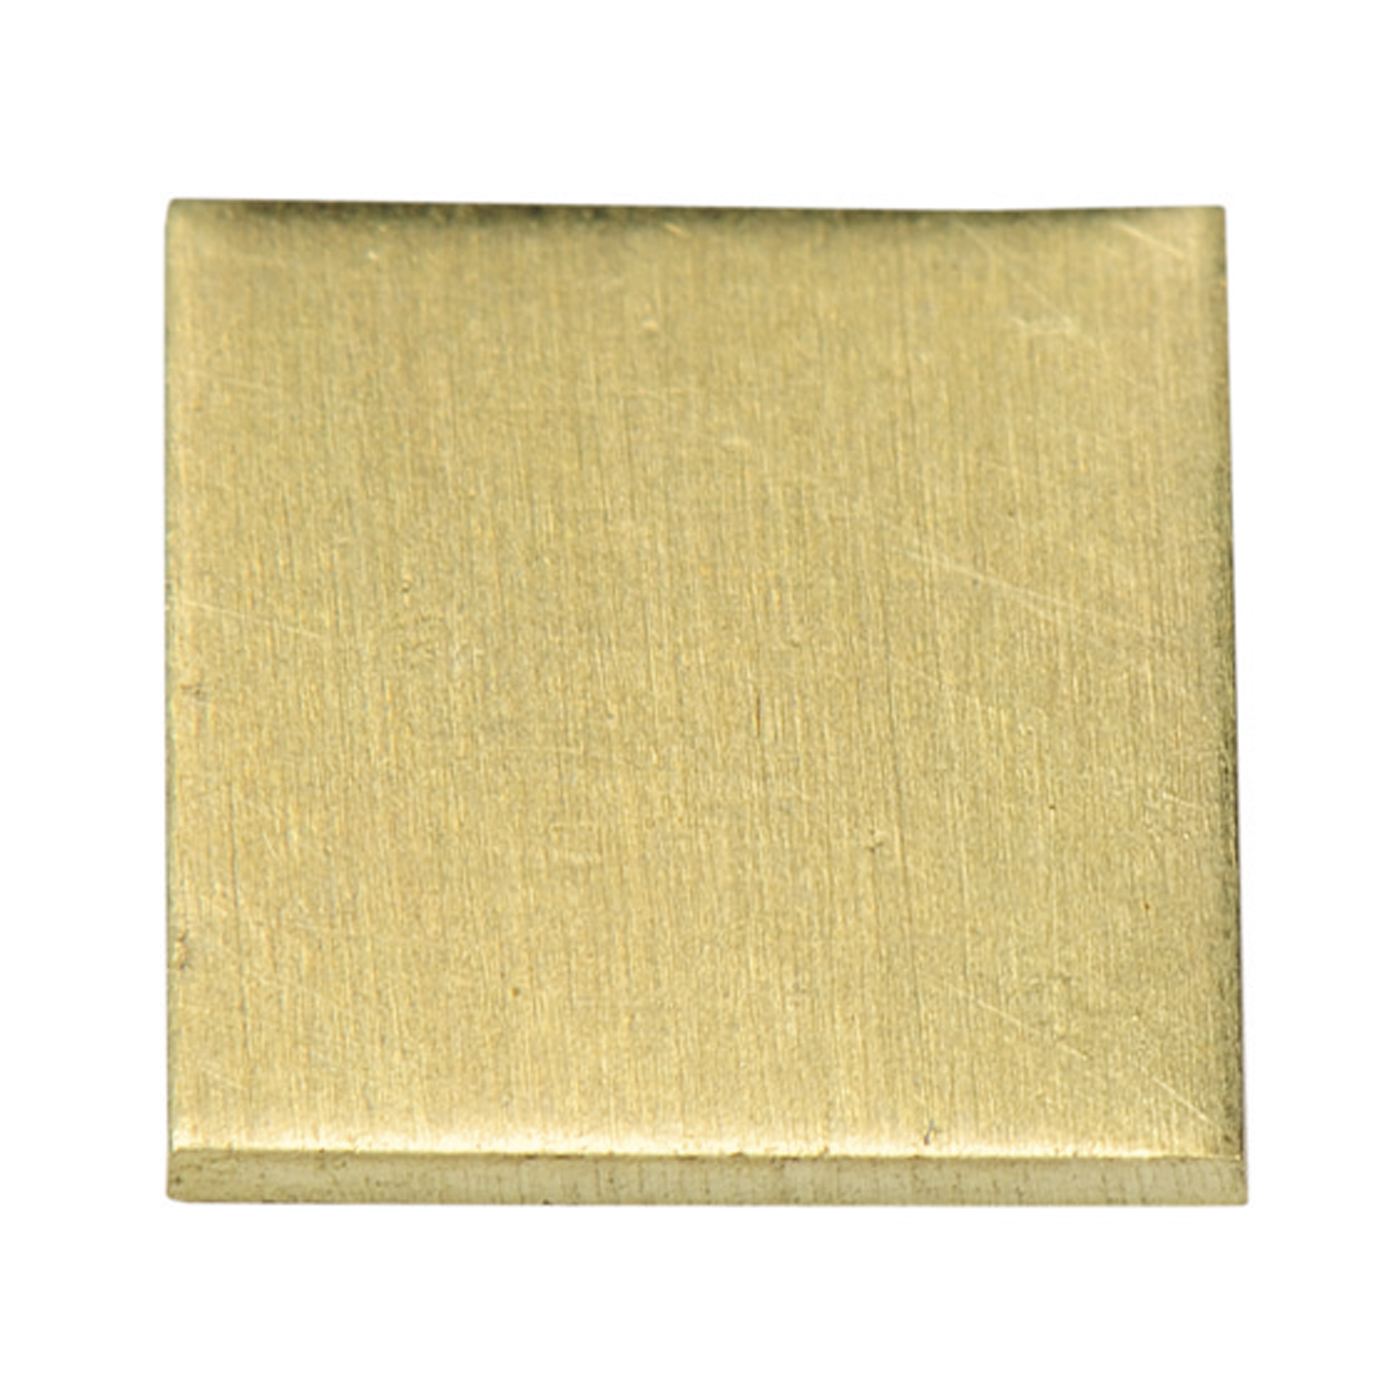 Gold Calibrating Small Plate, 14 Karat - 1 piece